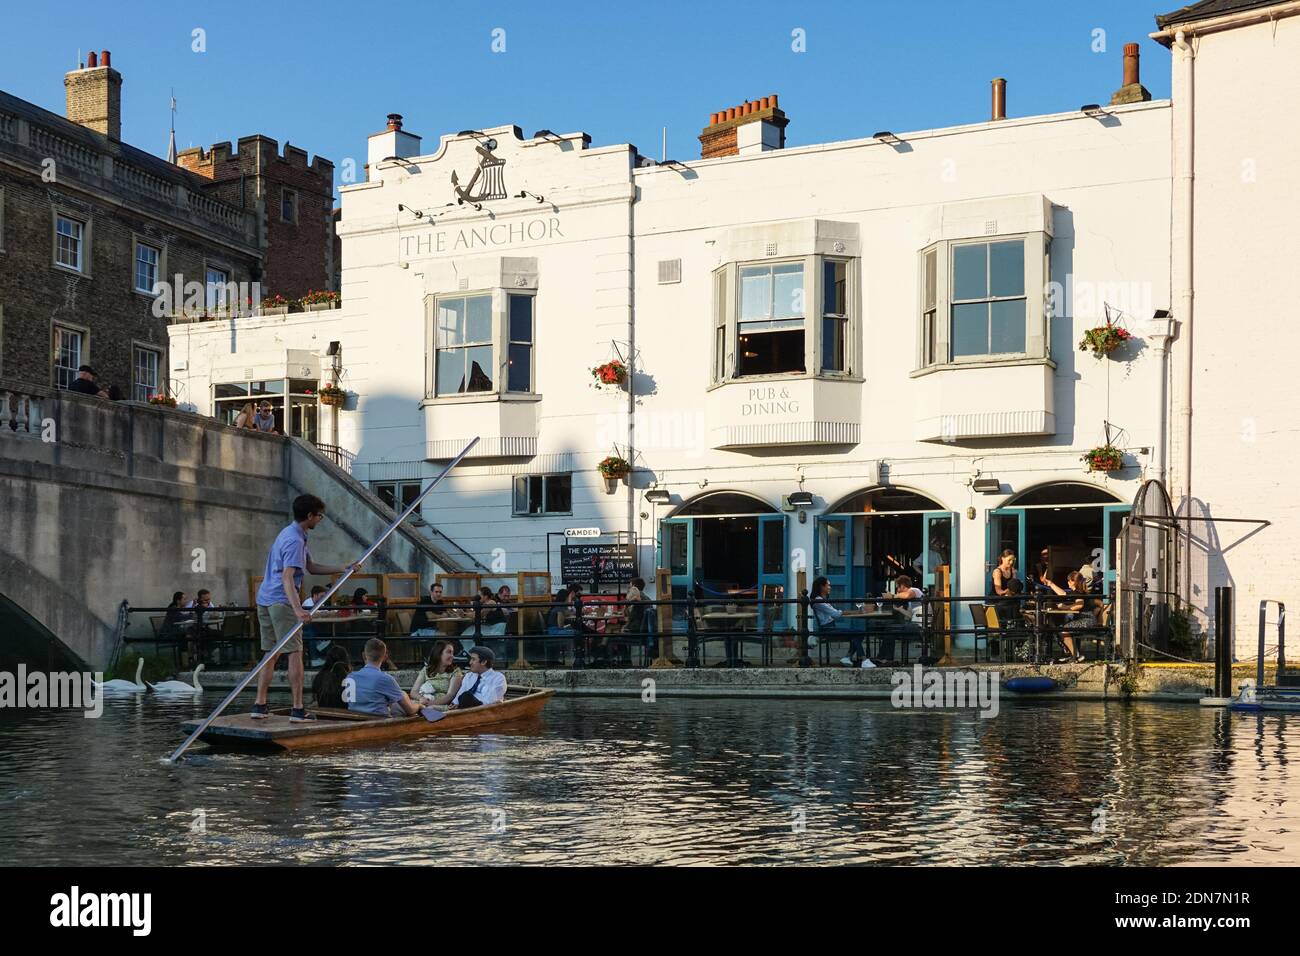 The Anchor pub et restaurant à Cambridge, Cambridgeshire Angleterre Royaume-Uni Banque D'Images